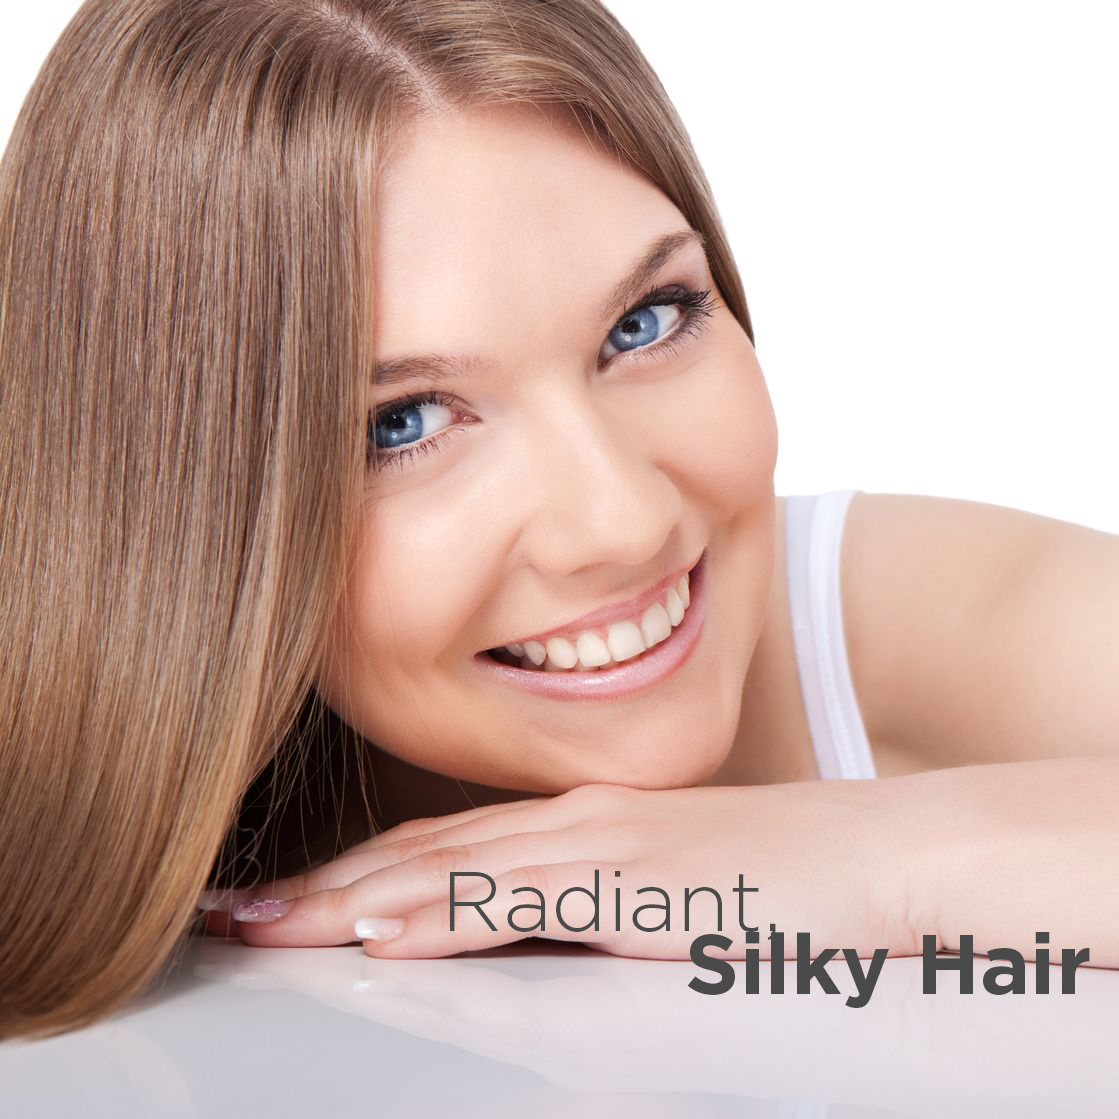 Radiant Silky Hair